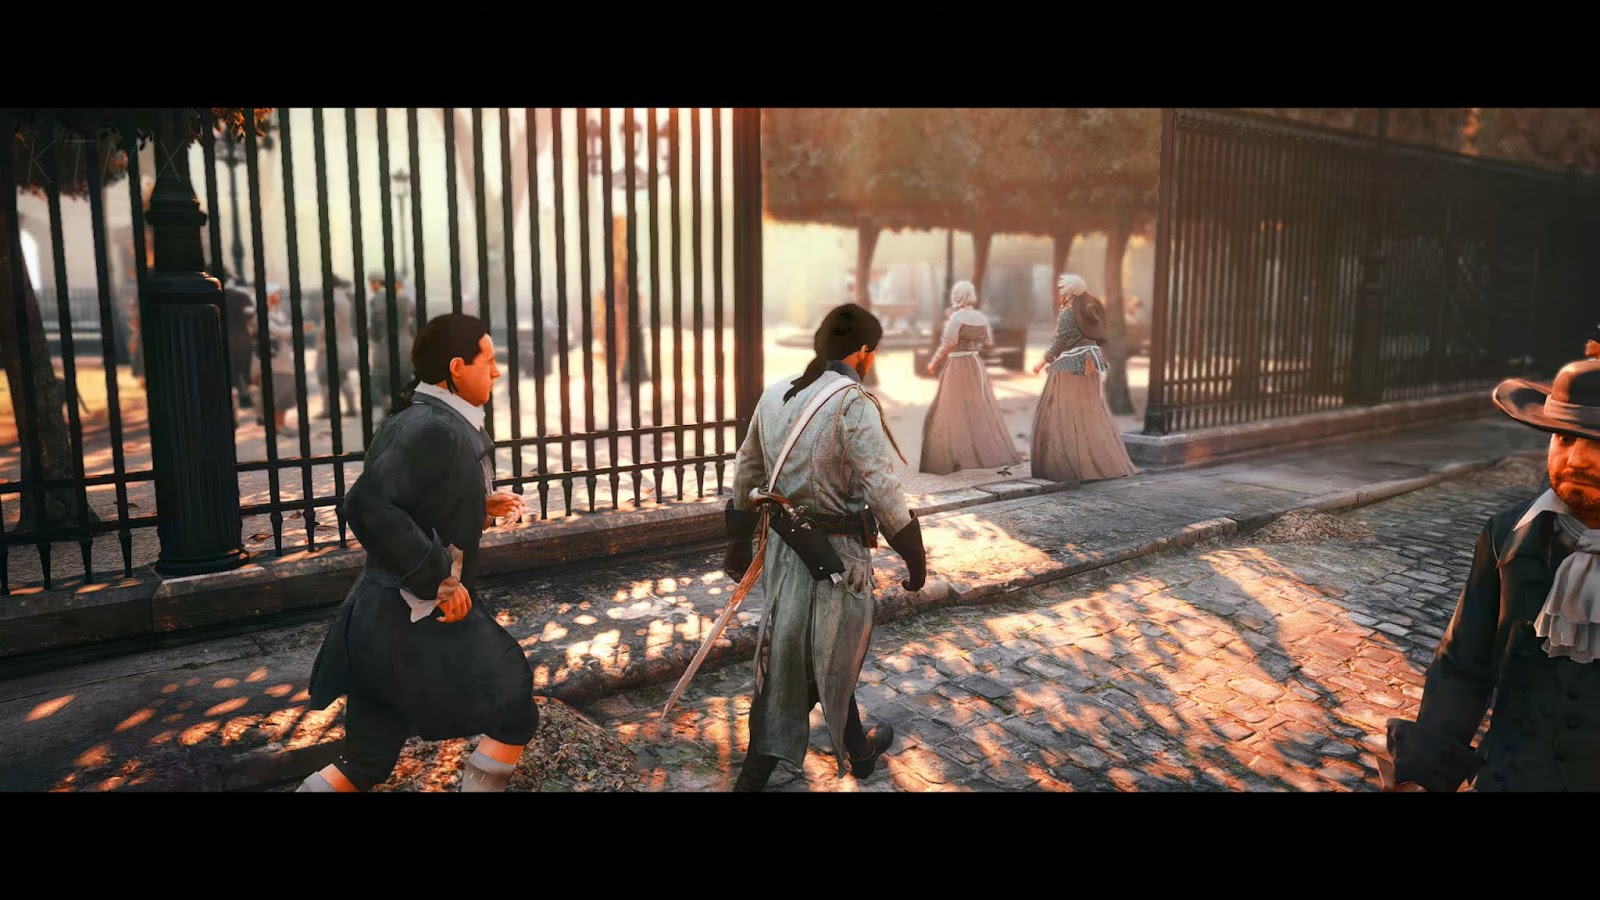 Assassin s Creed: Unity fica ainda mais lindo graças a um Mod Gráfico que  aplica Ray-Tracing